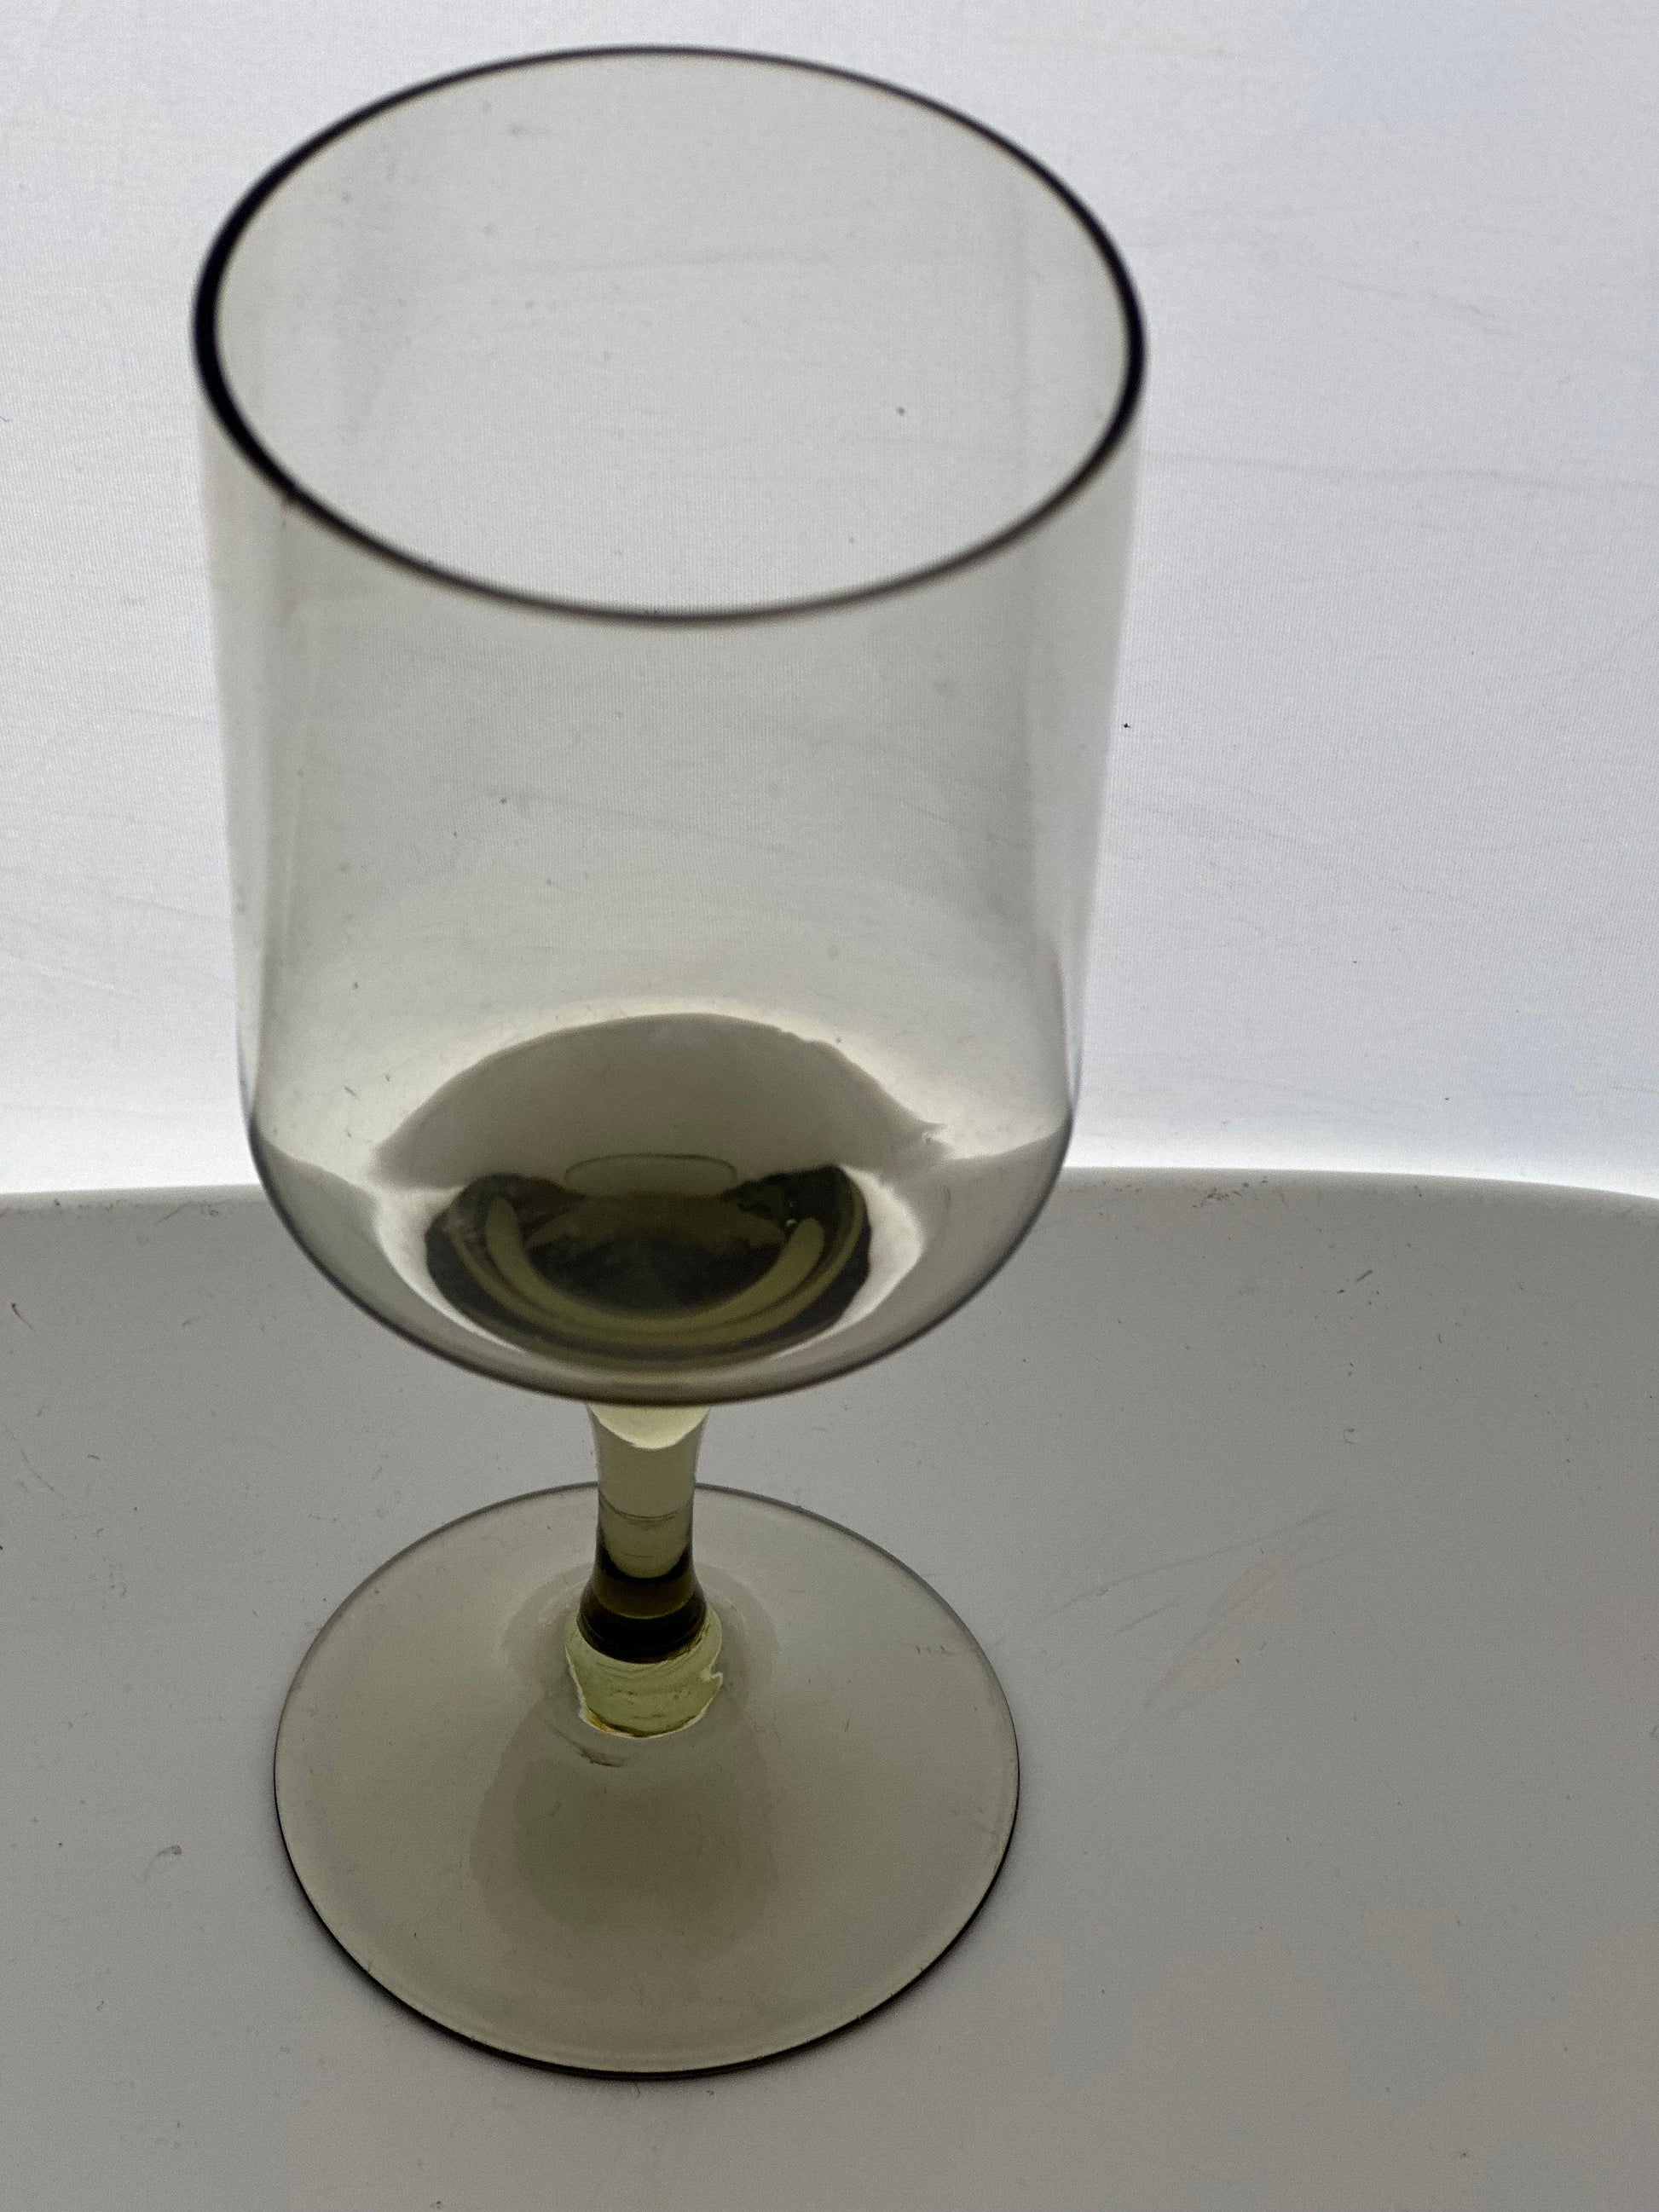 Swedish Wine or Sherry Glasses Handmade Smoked Glass